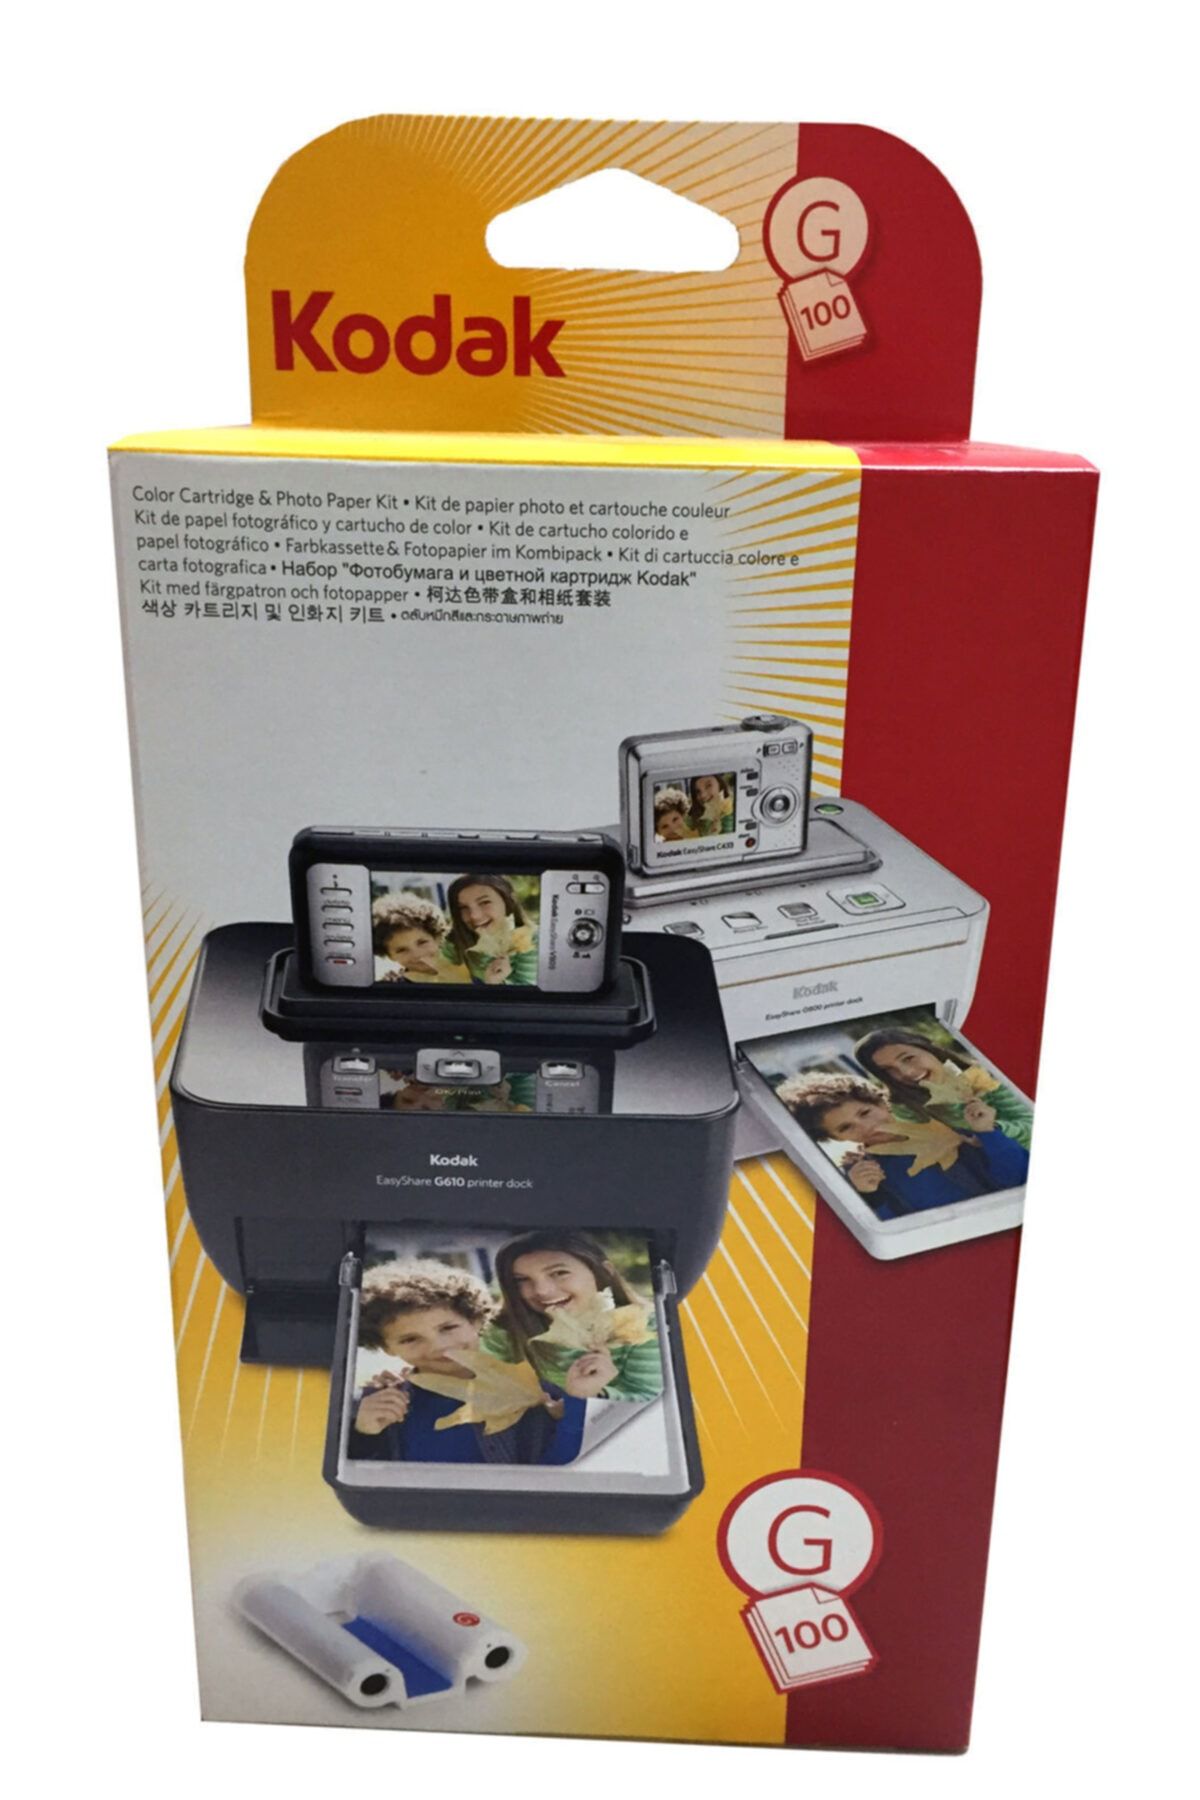 Kodak Easyshare G600 Printer Dock Için 100'lük 10x15cm Fotoğraf Kağıdı Ve Ribbonu